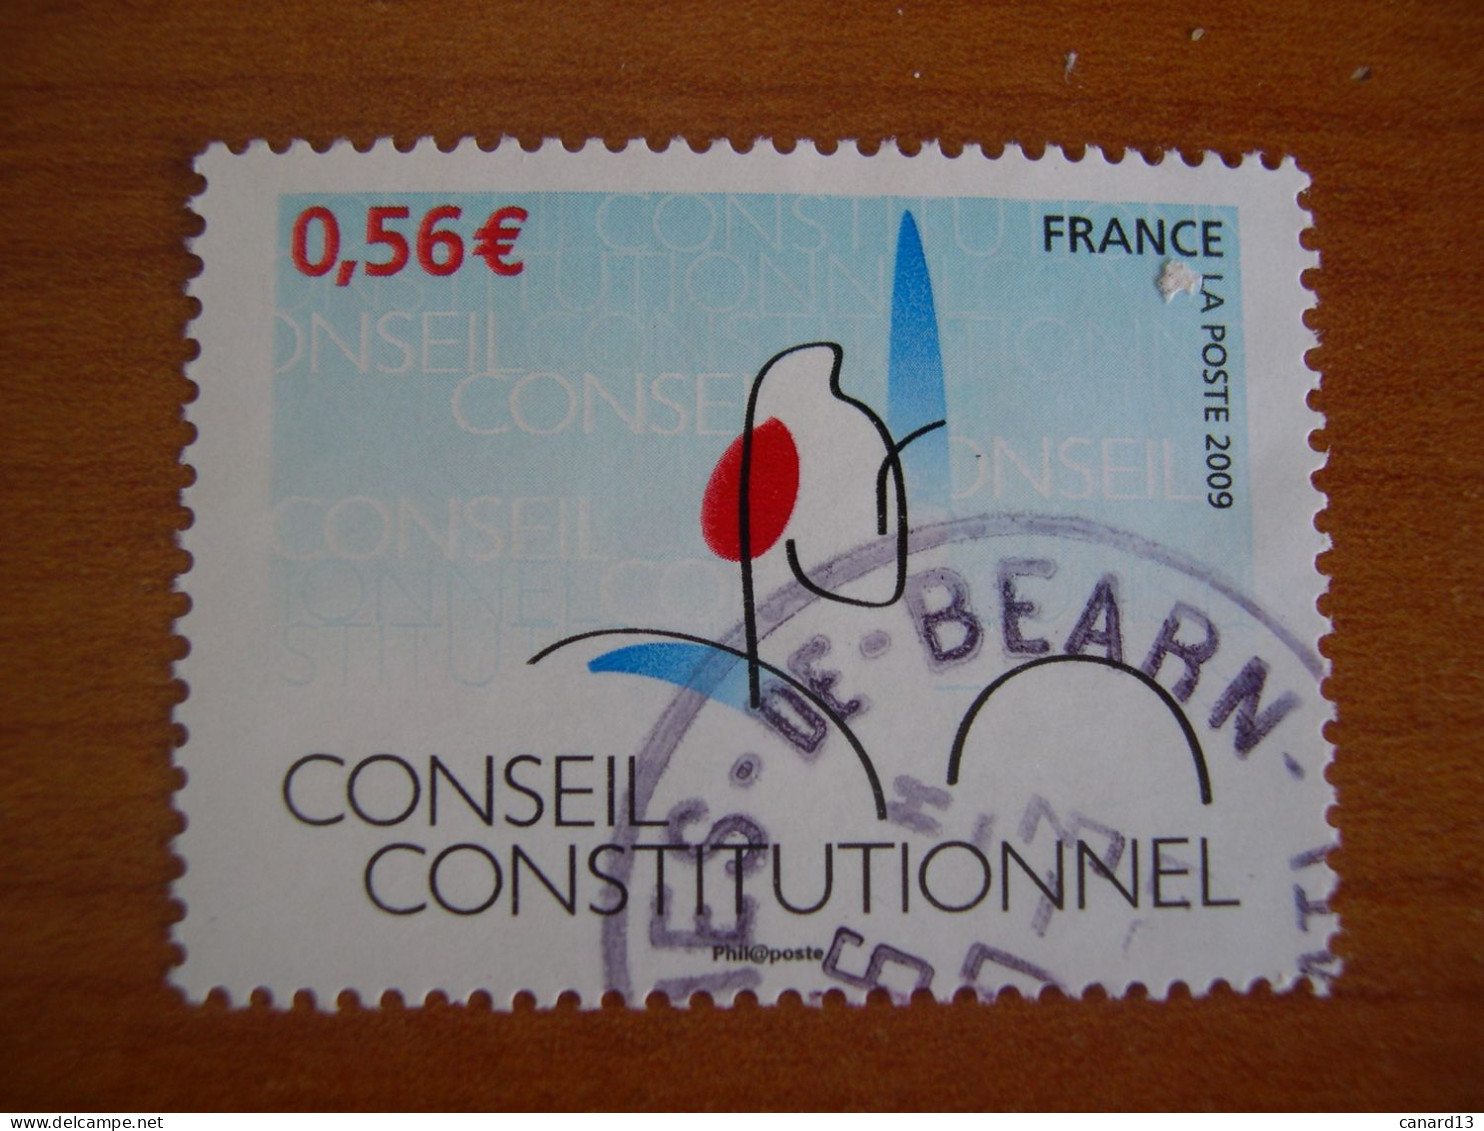 France Obl   N° 4347 Cachet Rond Noir - Oblitérés